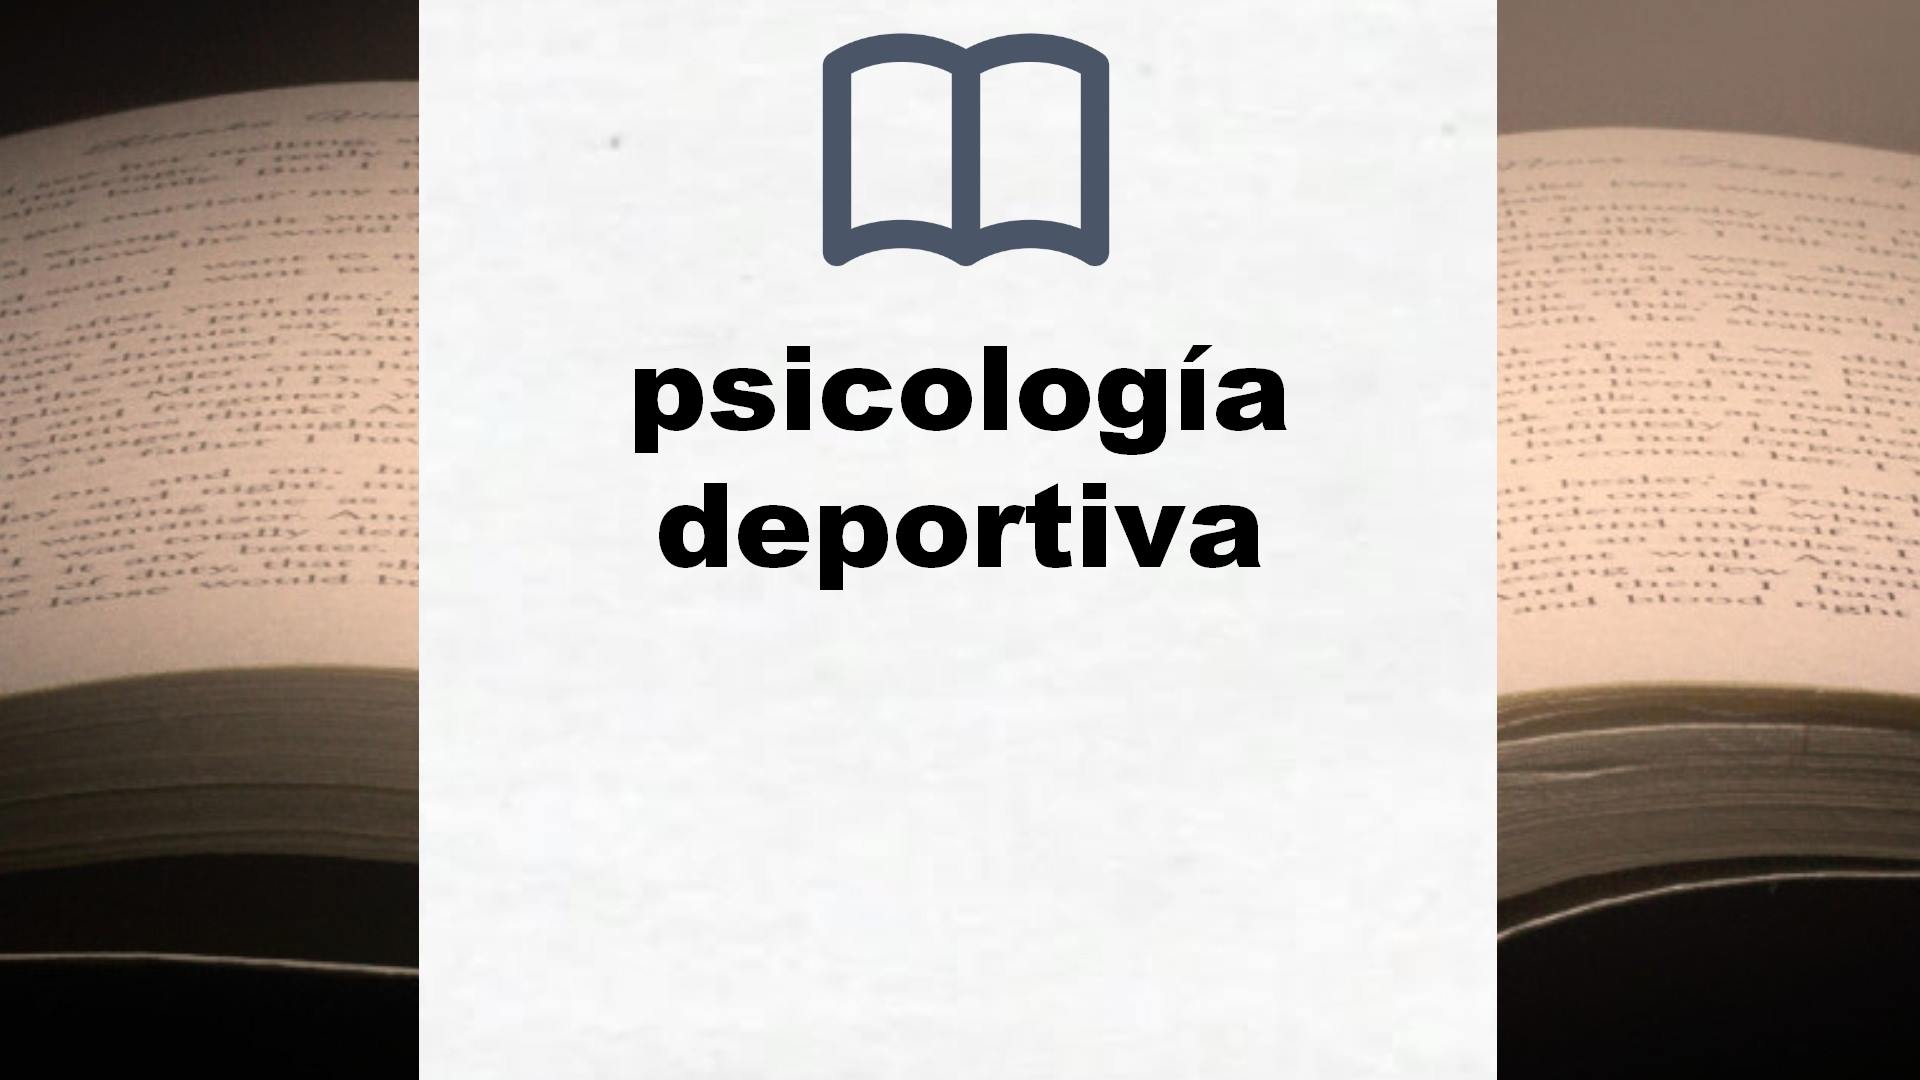 Libros sobre psicología deportiva